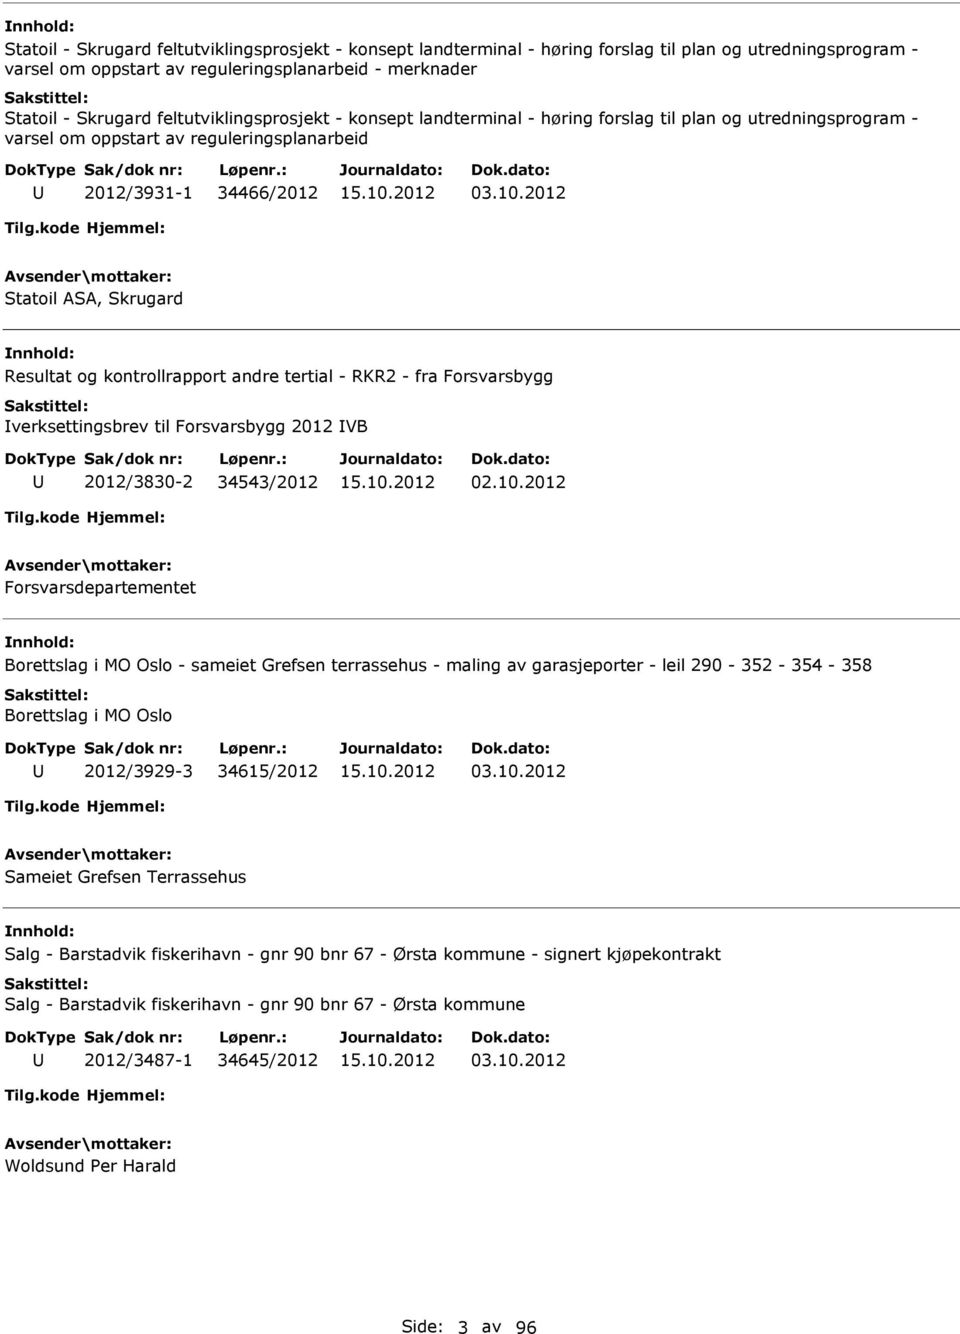 2012 Statoil ASA, Skrugard Resultat og kontrollrapport andre tertial - RKR2 - fra Forsvarsbygg verksettingsbrev til Forsvarsbygg 2012 VB 2012/3830-2 34543/2012 02.10.